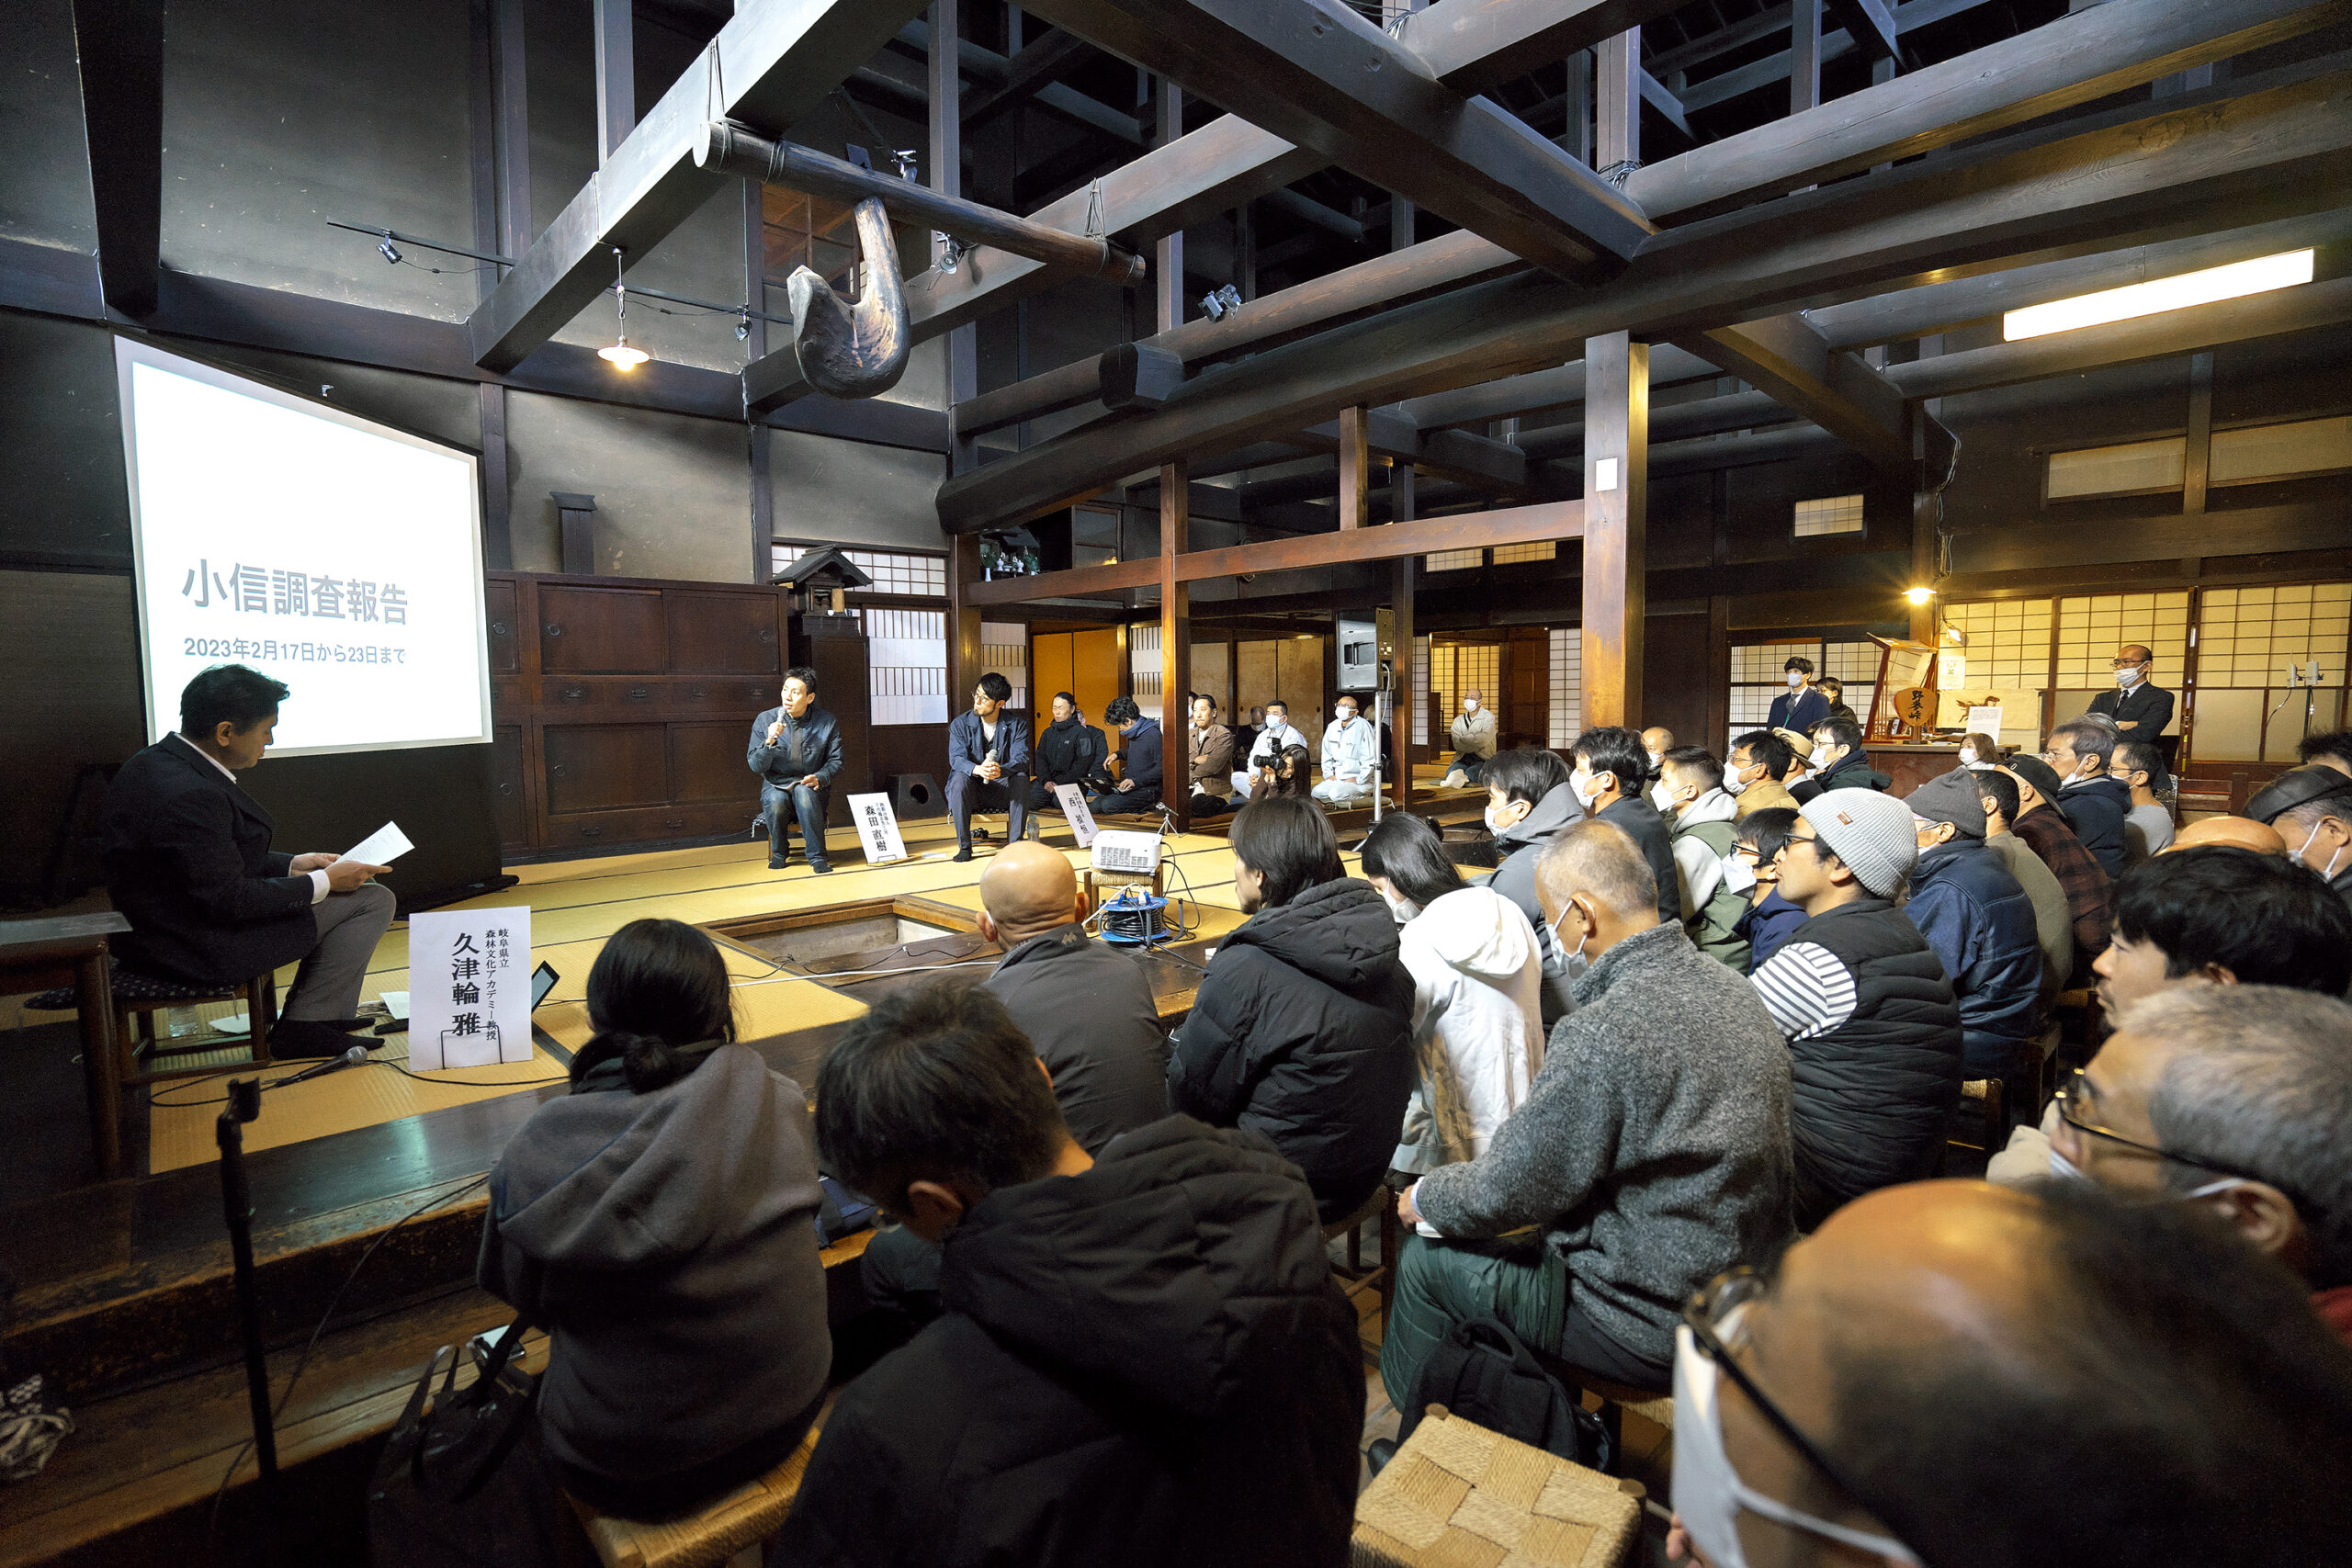 彫刻刃物の技術継承を考える車座集会」実施報告 : 岐阜県立森林文化